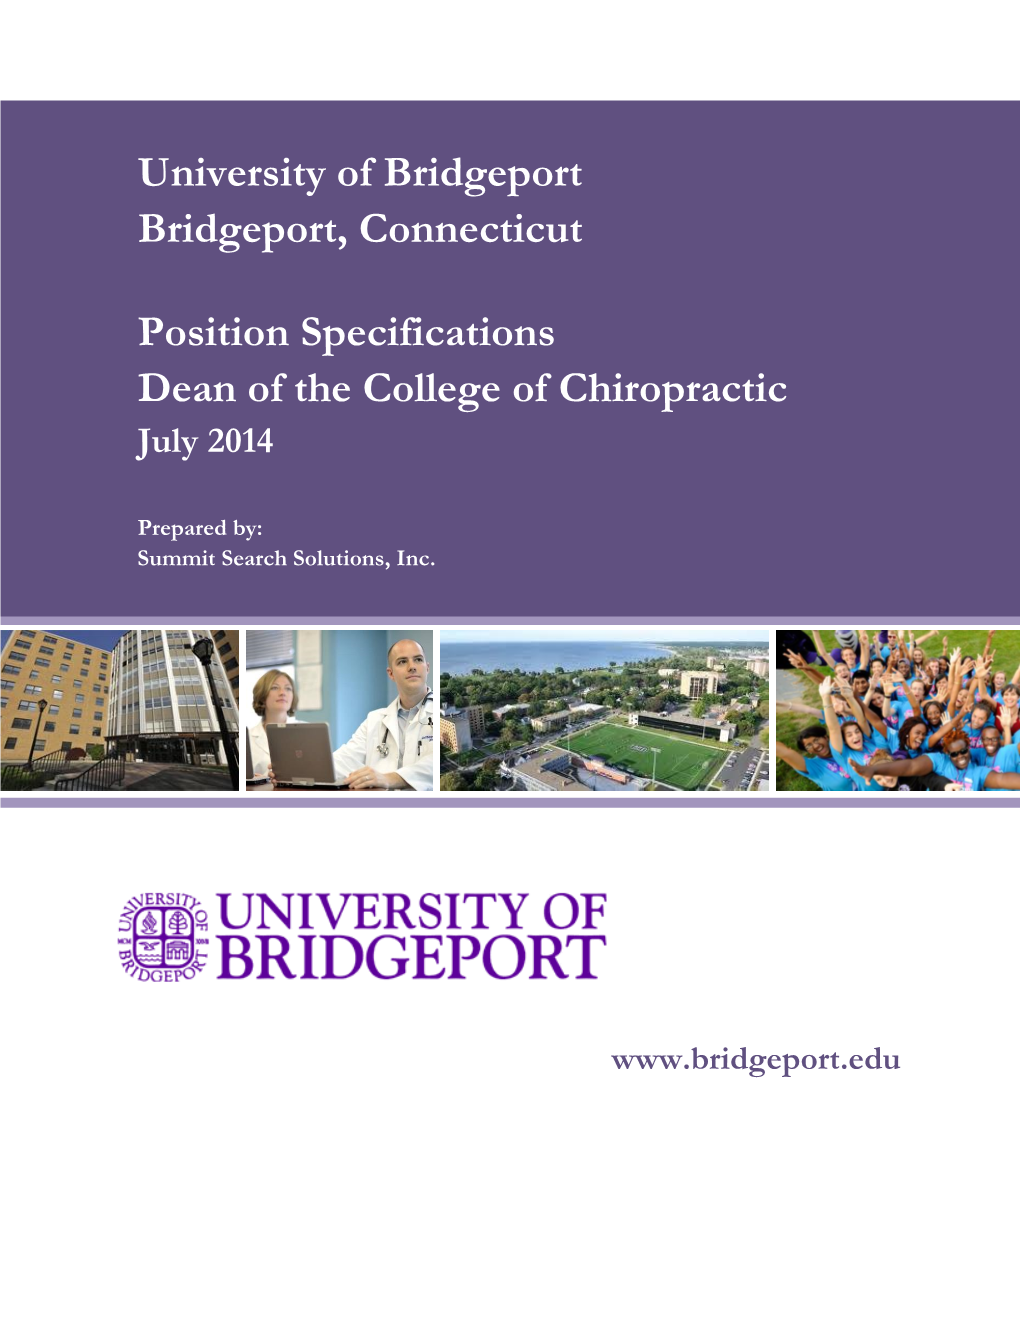 University of Bridgeport Bridgeport, Connecticut Position Specifications Dean of the College of Chiropractic